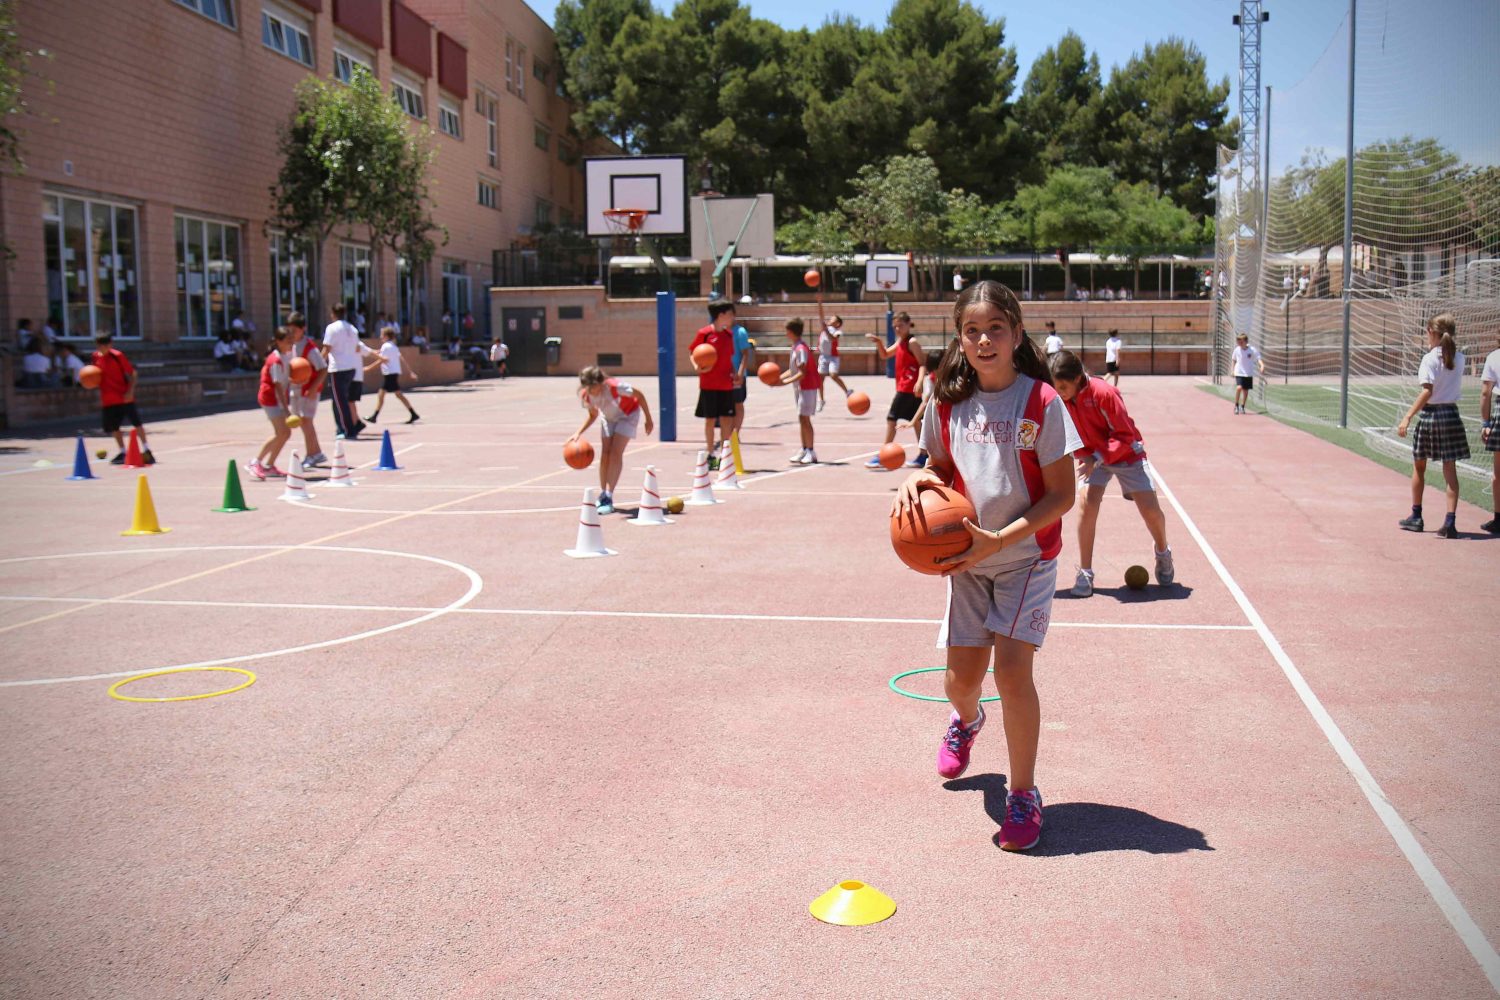 Pistas mini basquet Caxton College Colegio Británico en Valencia